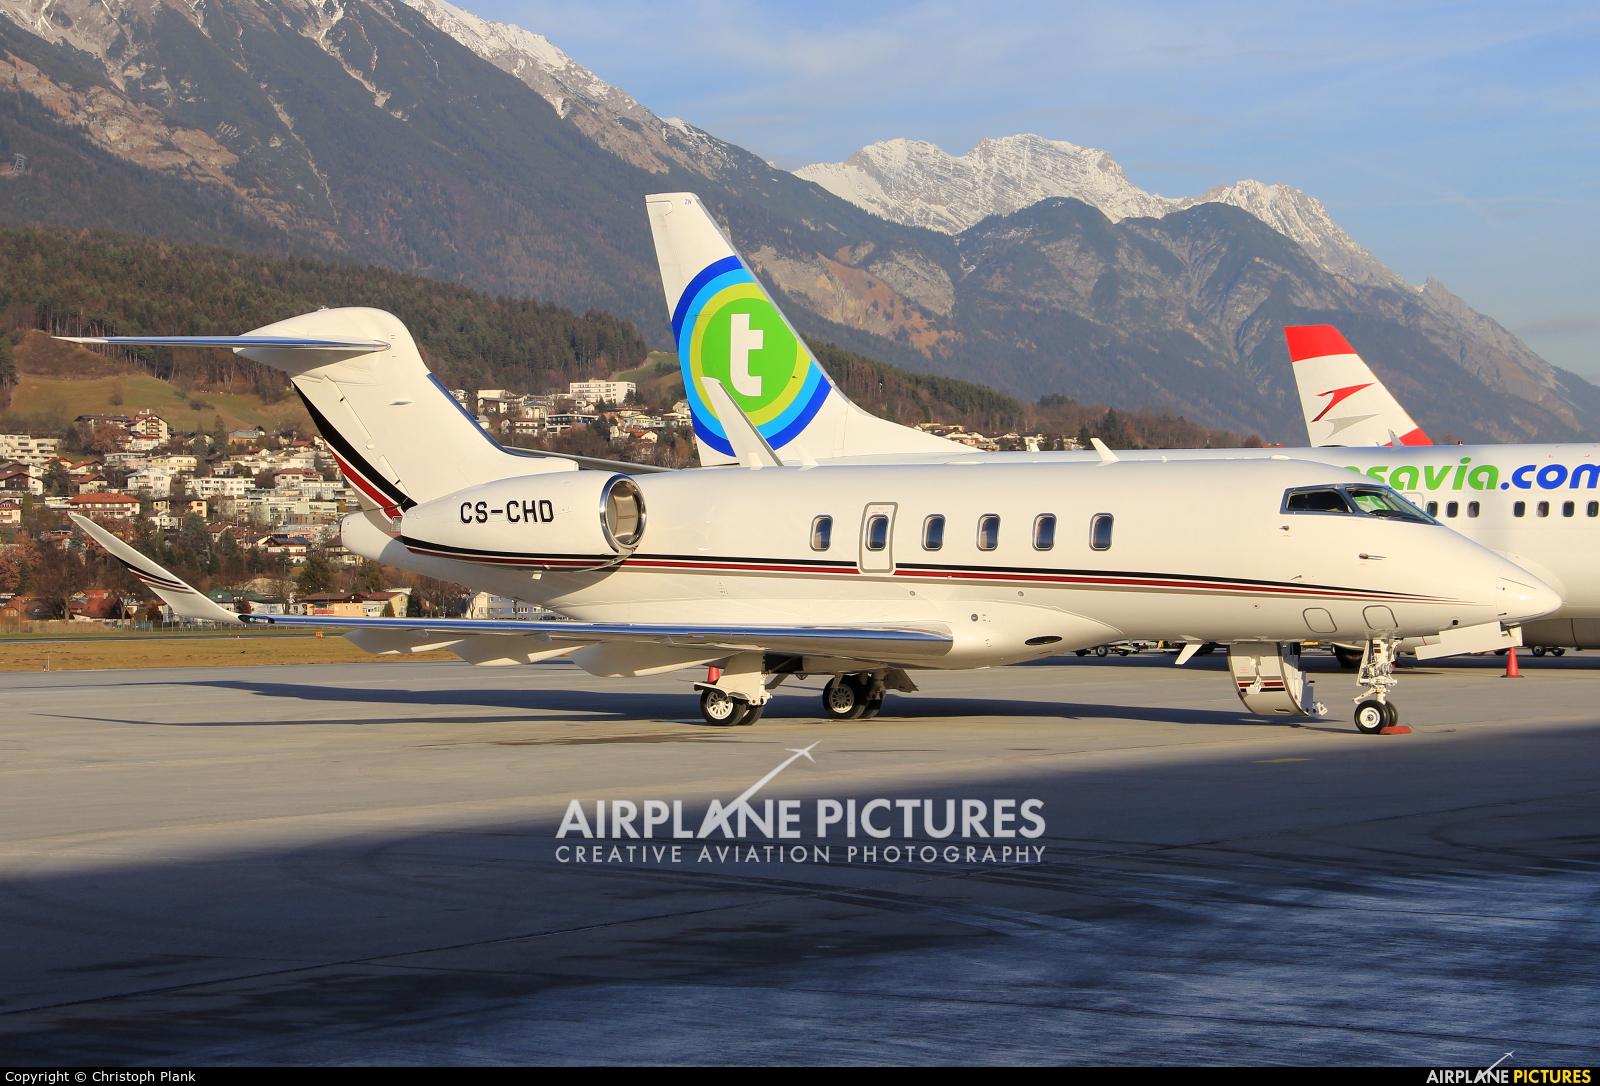 NetJets Europe (Portugal) CS-CHD aircraft at Innsbruck